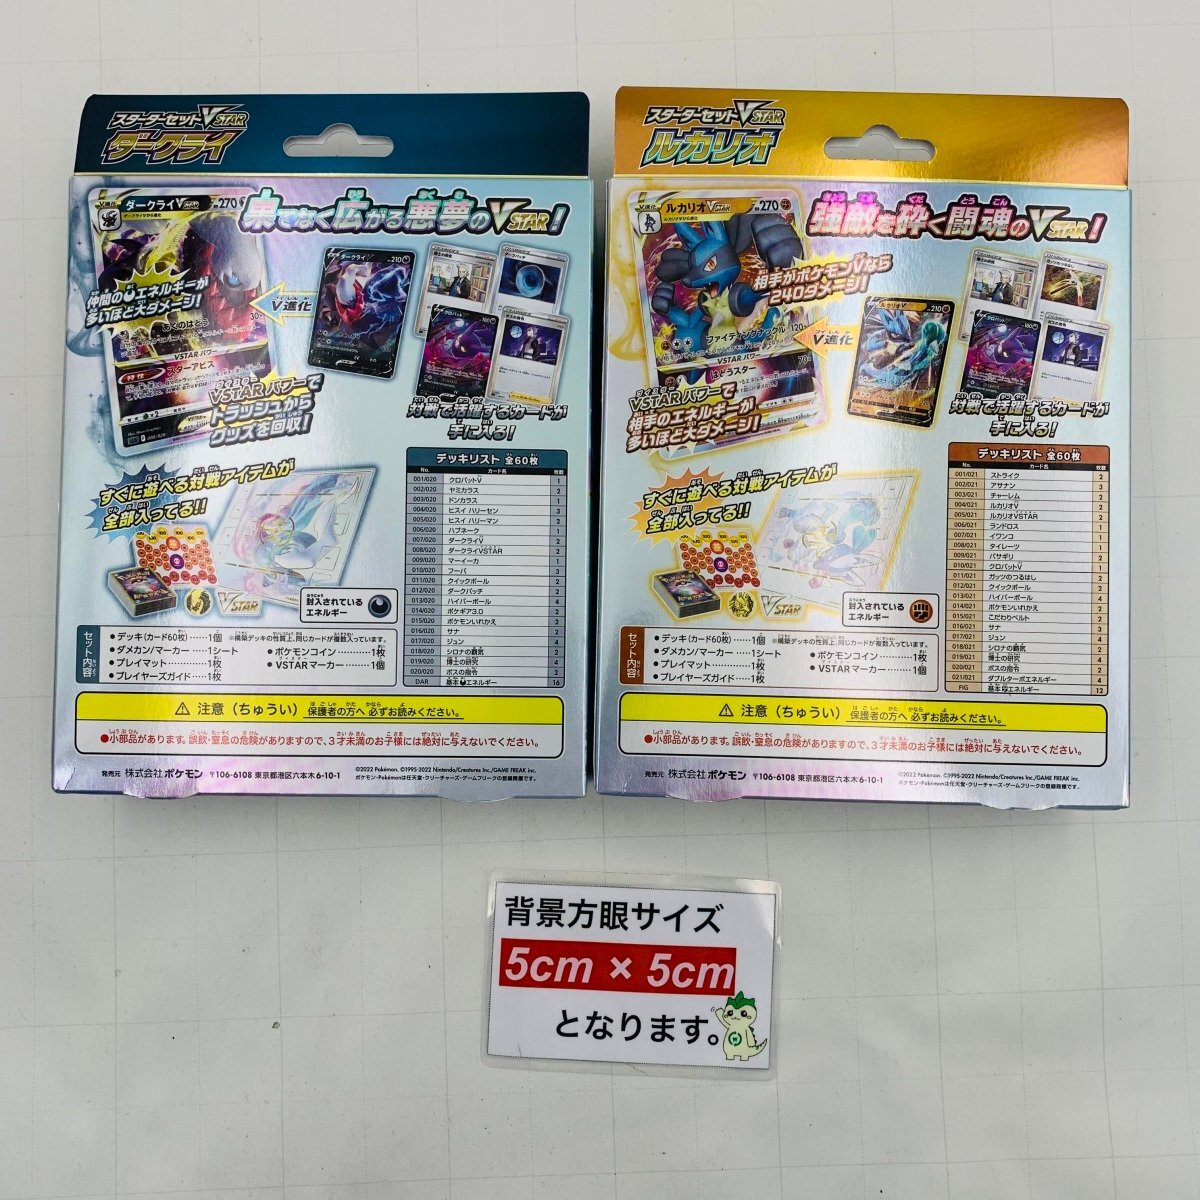 新品未開封 ポケットモンスター ポケモン カードゲーム ソード & シールド スターターセット VSTAR ダークライ ルカリオ 2種セットの画像4